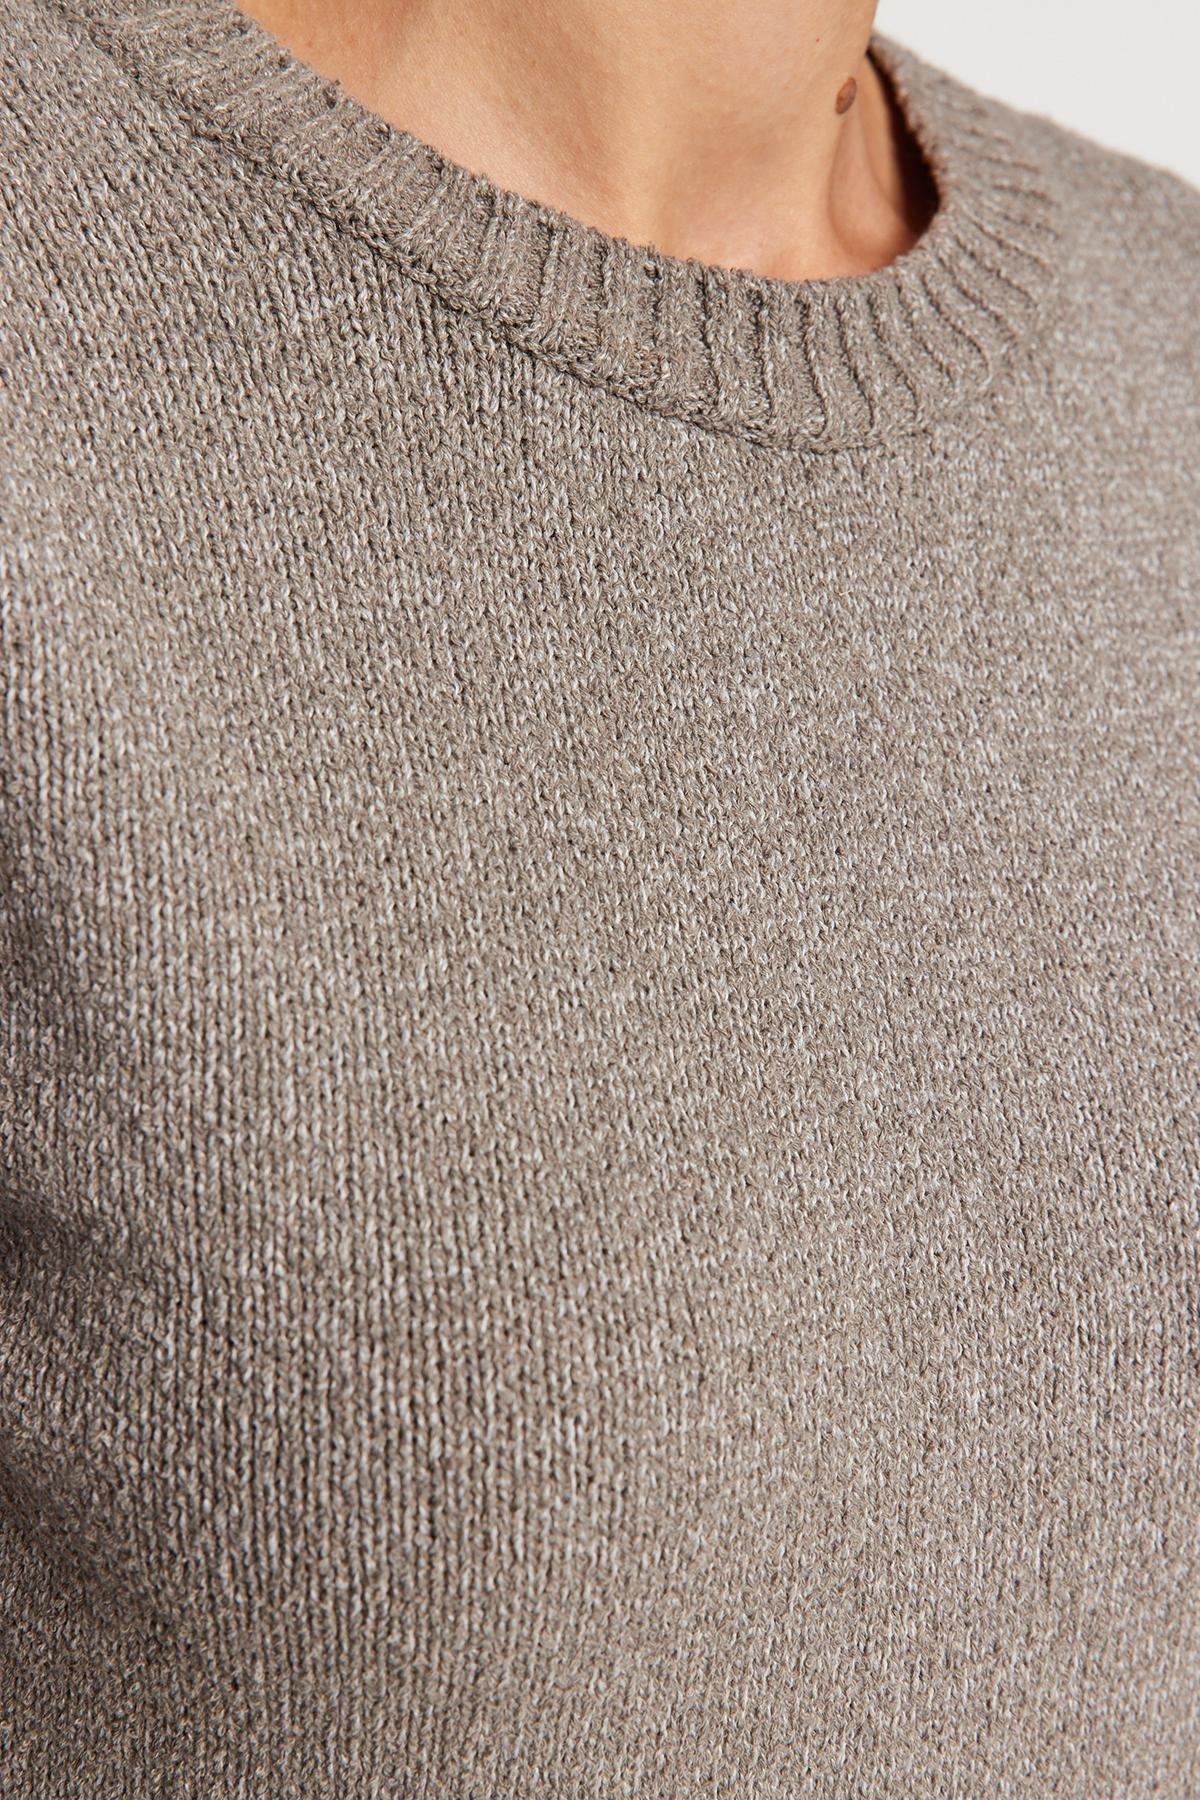 Trendyol - Grey Knitwear Sweater